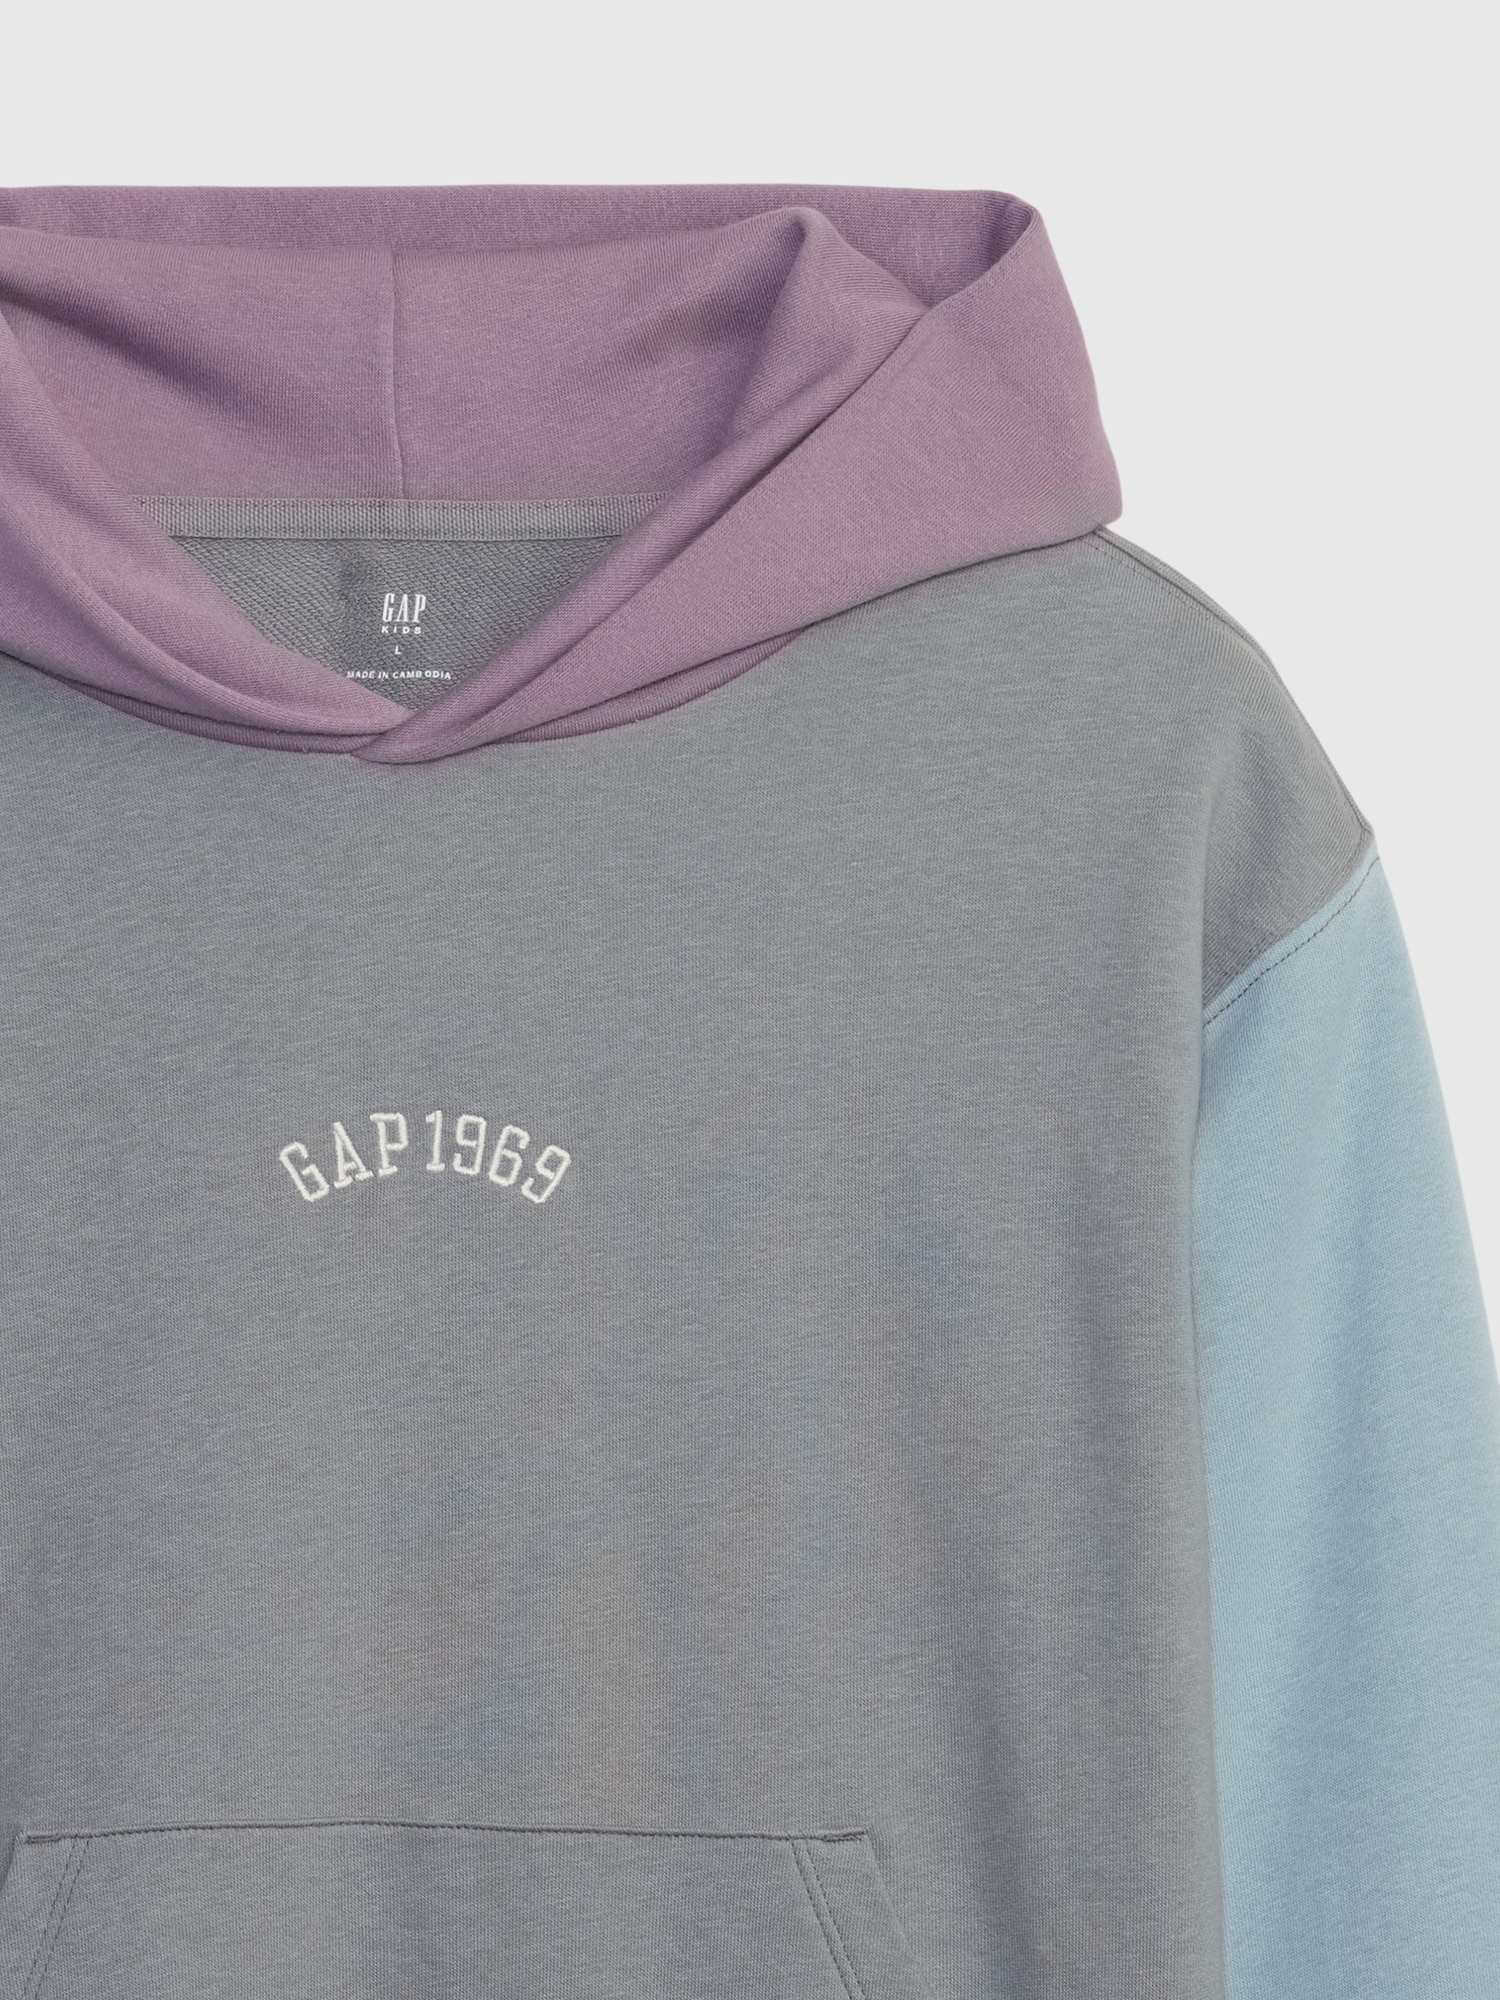 Gap公式オンラインストア | カラーブロック GAPアーチロゴパーカー